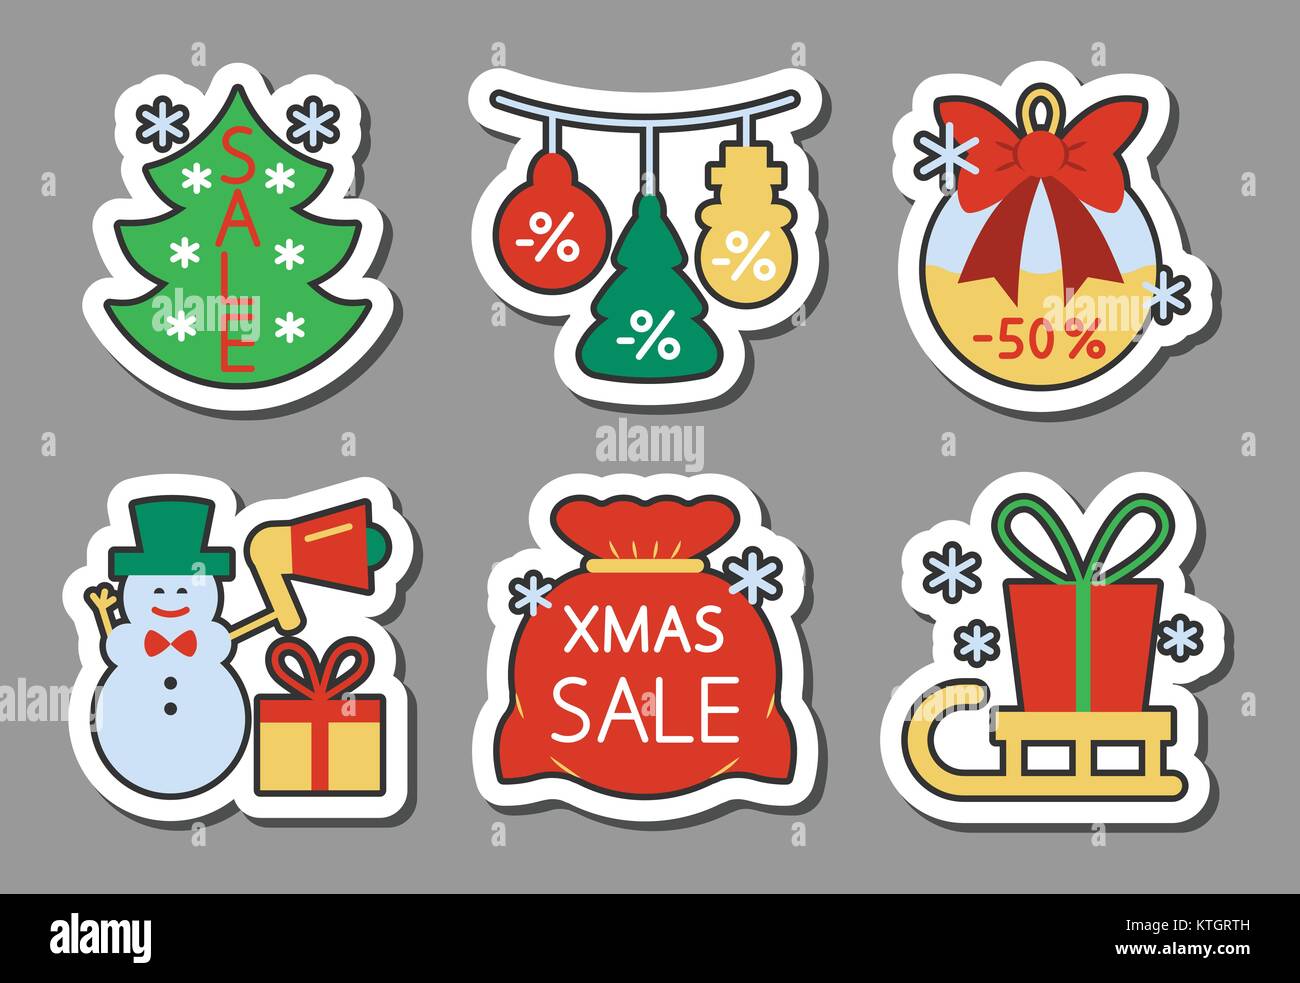 Weihnachtszeit Verkauf icon Sticker Set. Flat Style Farbe Spiel Abzeichen, Web, Werbung, Banner, Wirtschaft, Emblem, Logo, Print, Tags, Etiketten, Poster, Coupon isol Stock Vektor